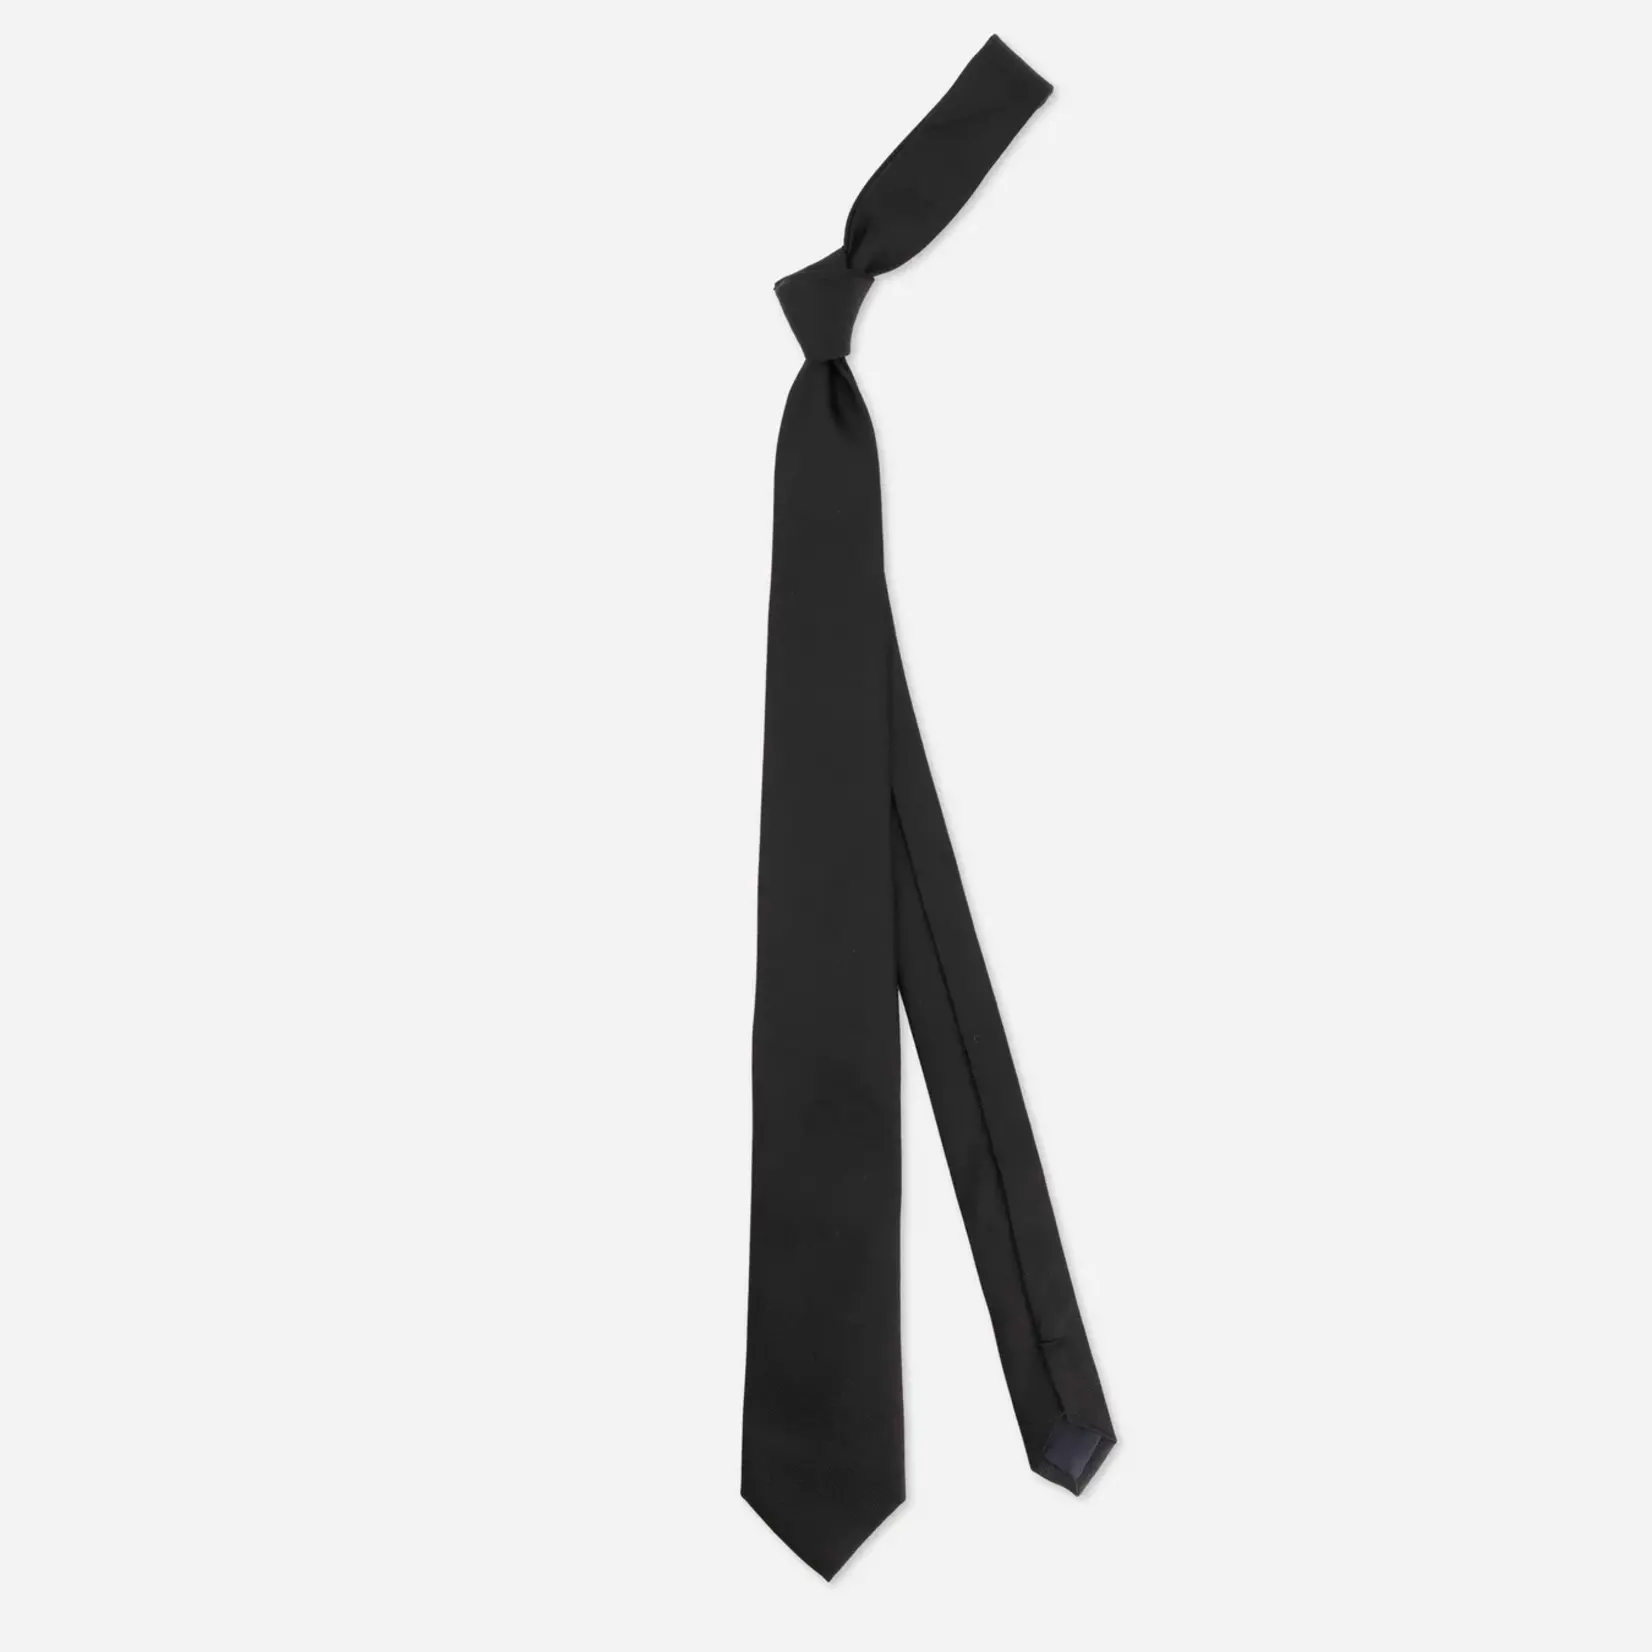 Tie Bar Grosgrain Solid Black Tie - Skinny